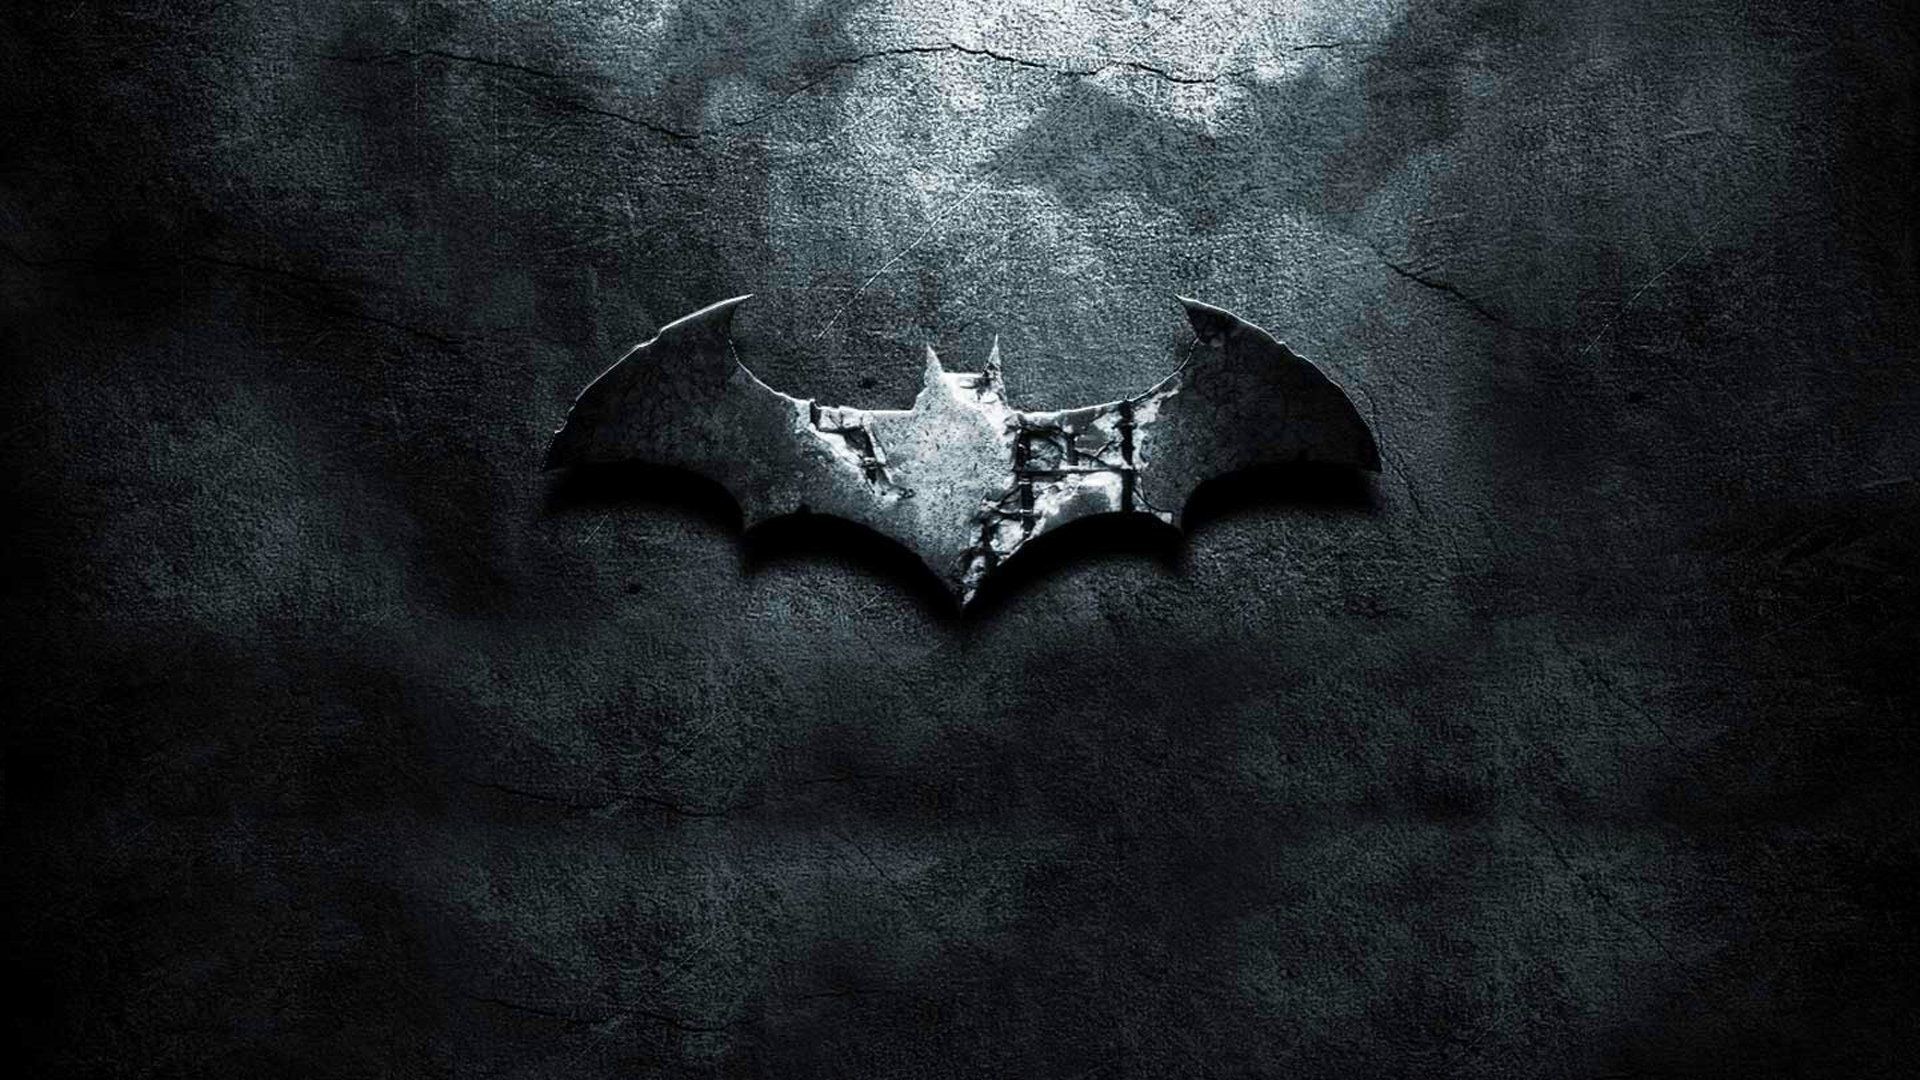 Biểu tượng Batman: Hãy tìm hiểu về hành trình và những chiến công đầy ấn tượng của sự nghiệp của Batman thông qua biểu tượng Batman. Khám phá những tấm hình độc đáo cùng các biểu tượng Batman được tạo ra từ đầu đến chân trong một loạt các tác phẩm nghệ thuật. Hãy chiêm ngưỡng một trong những nhân vật huyền thoại được yêu thích nhất qua những bức ảnh đẹp.